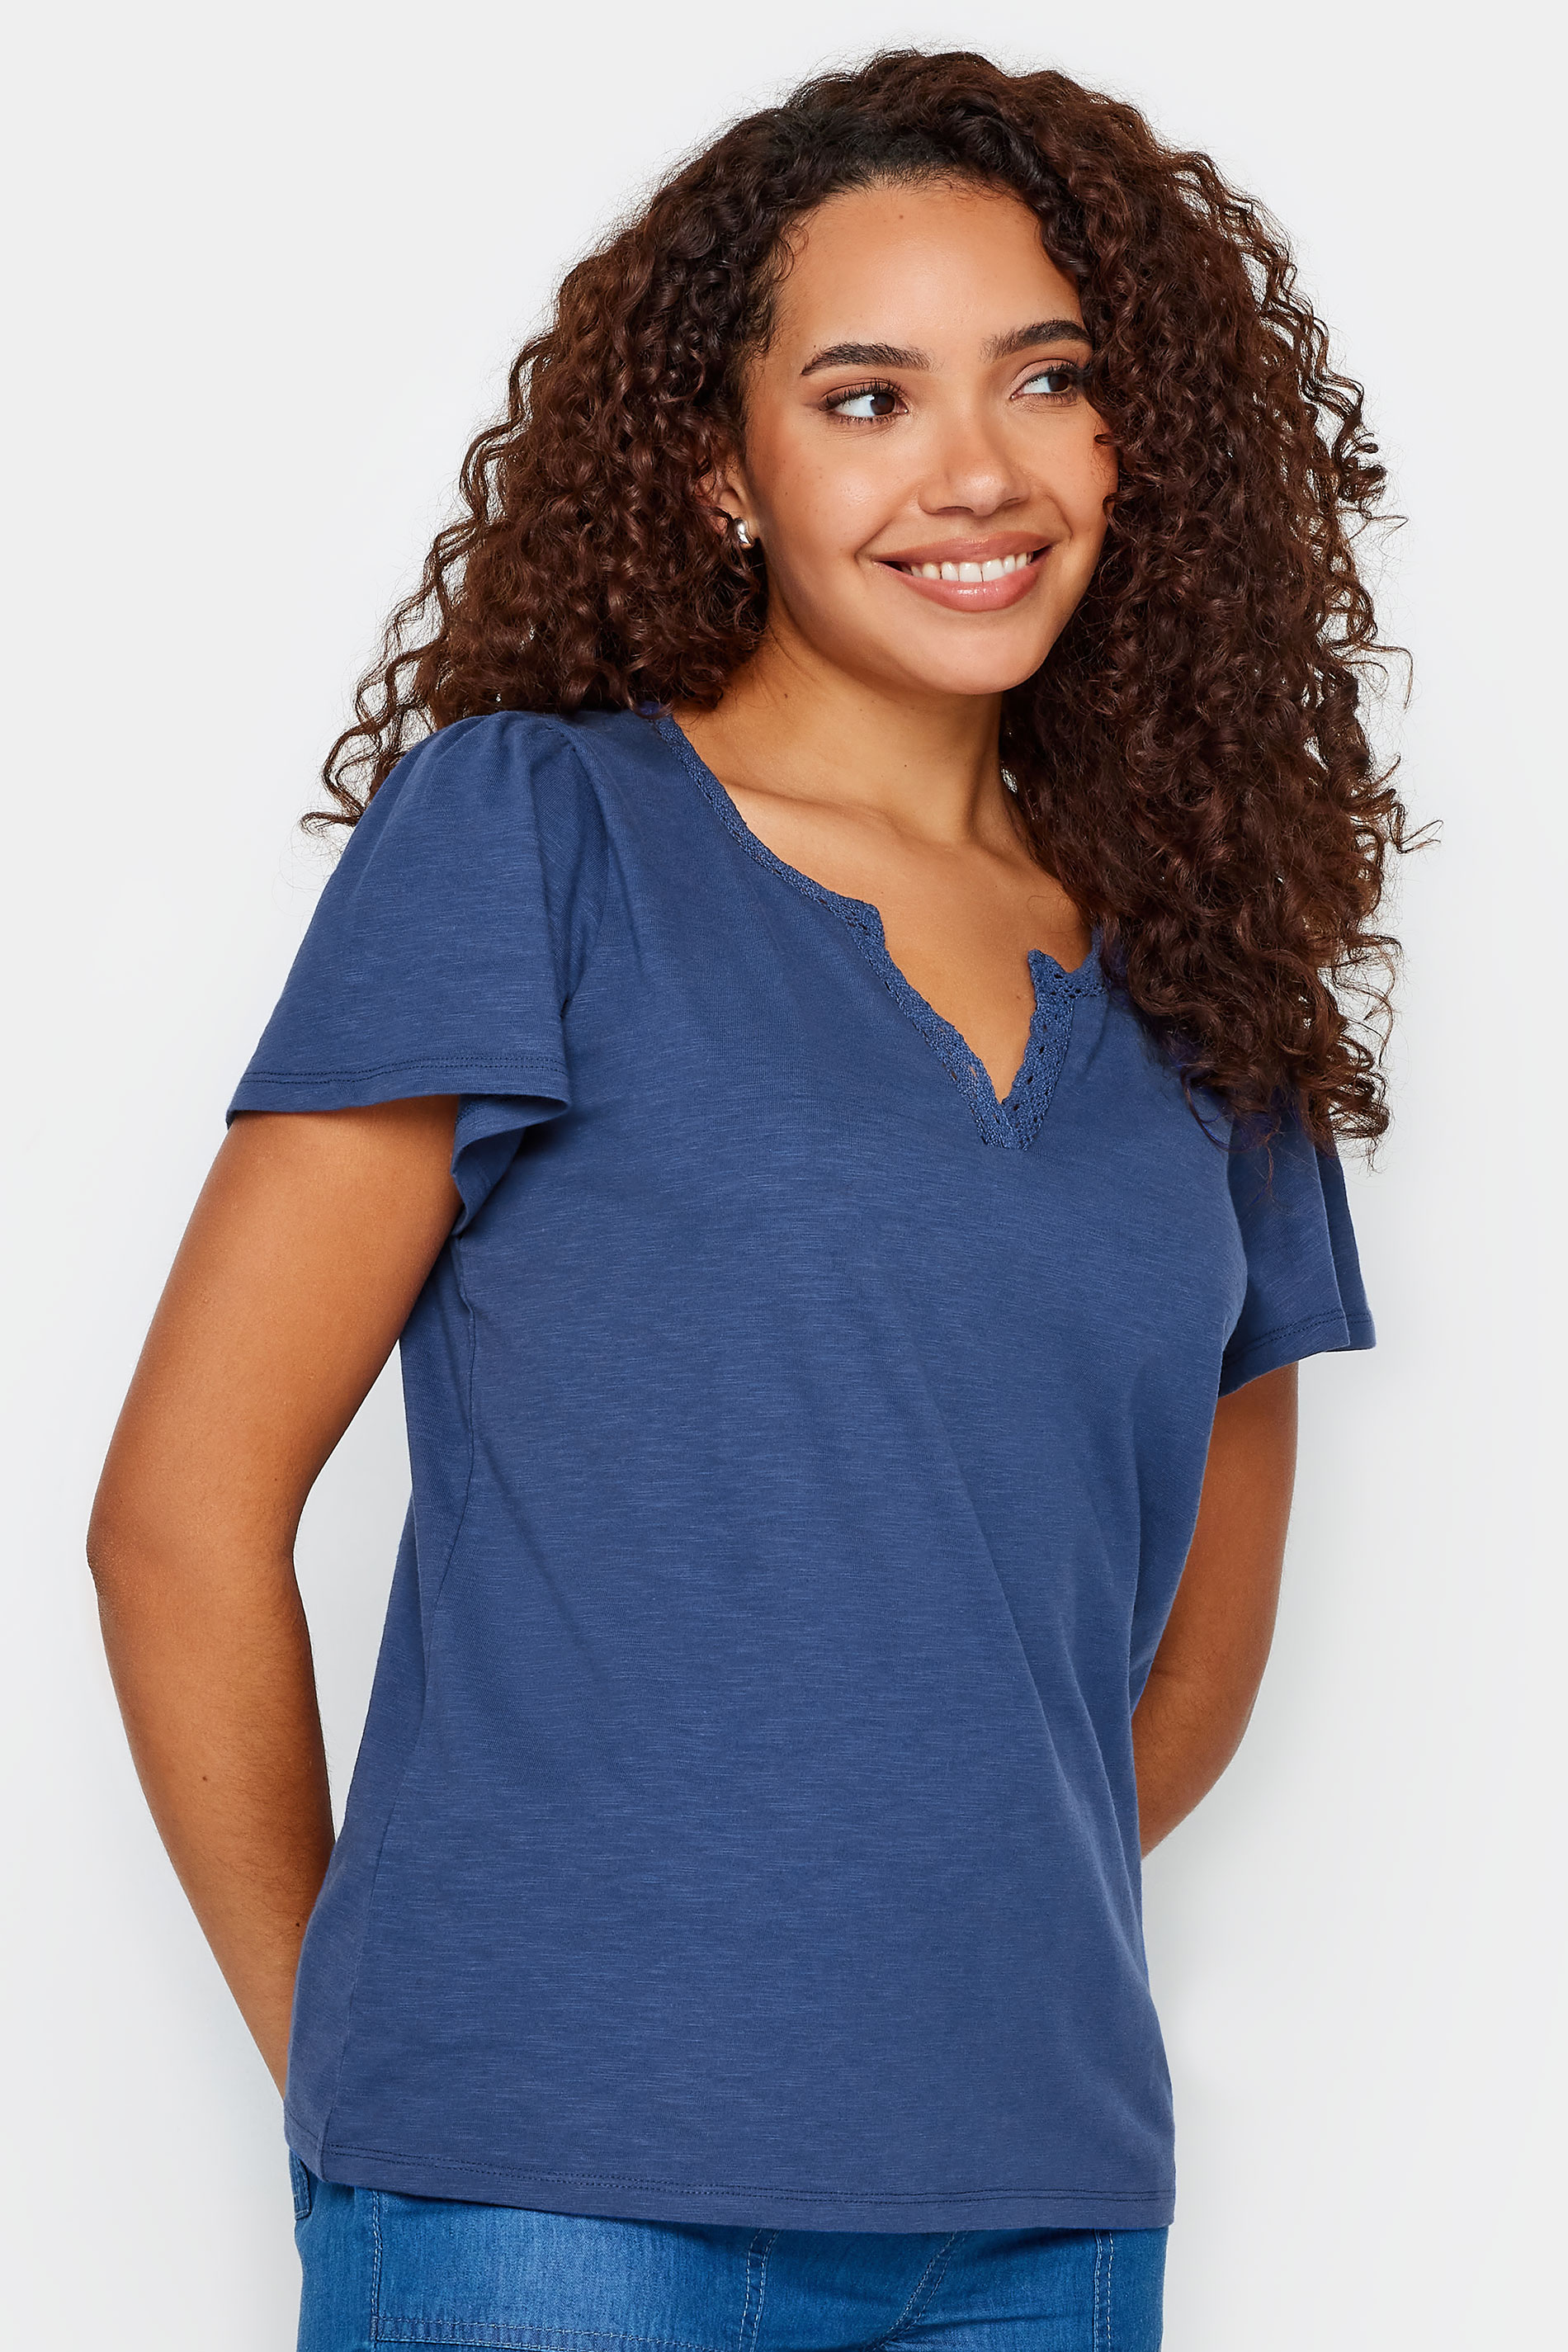 M&Co Navy Blue Lace Trim Short Sleeve V-Neck Cotton T-Shirt | M&Co 1